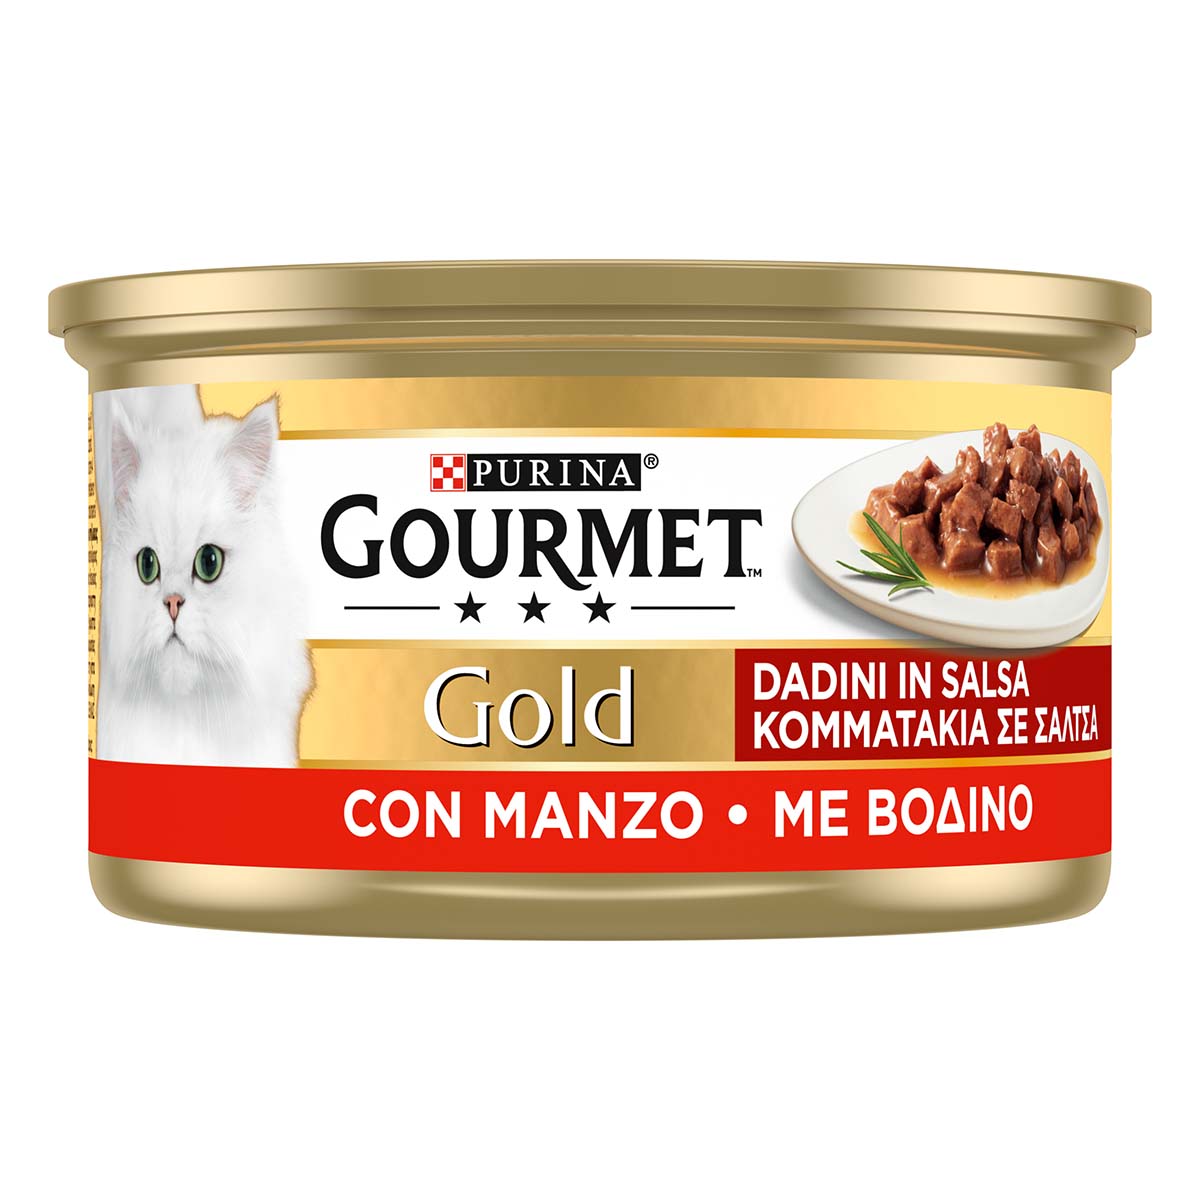 GOURMET GOLD Dadini in salsa con Manzo